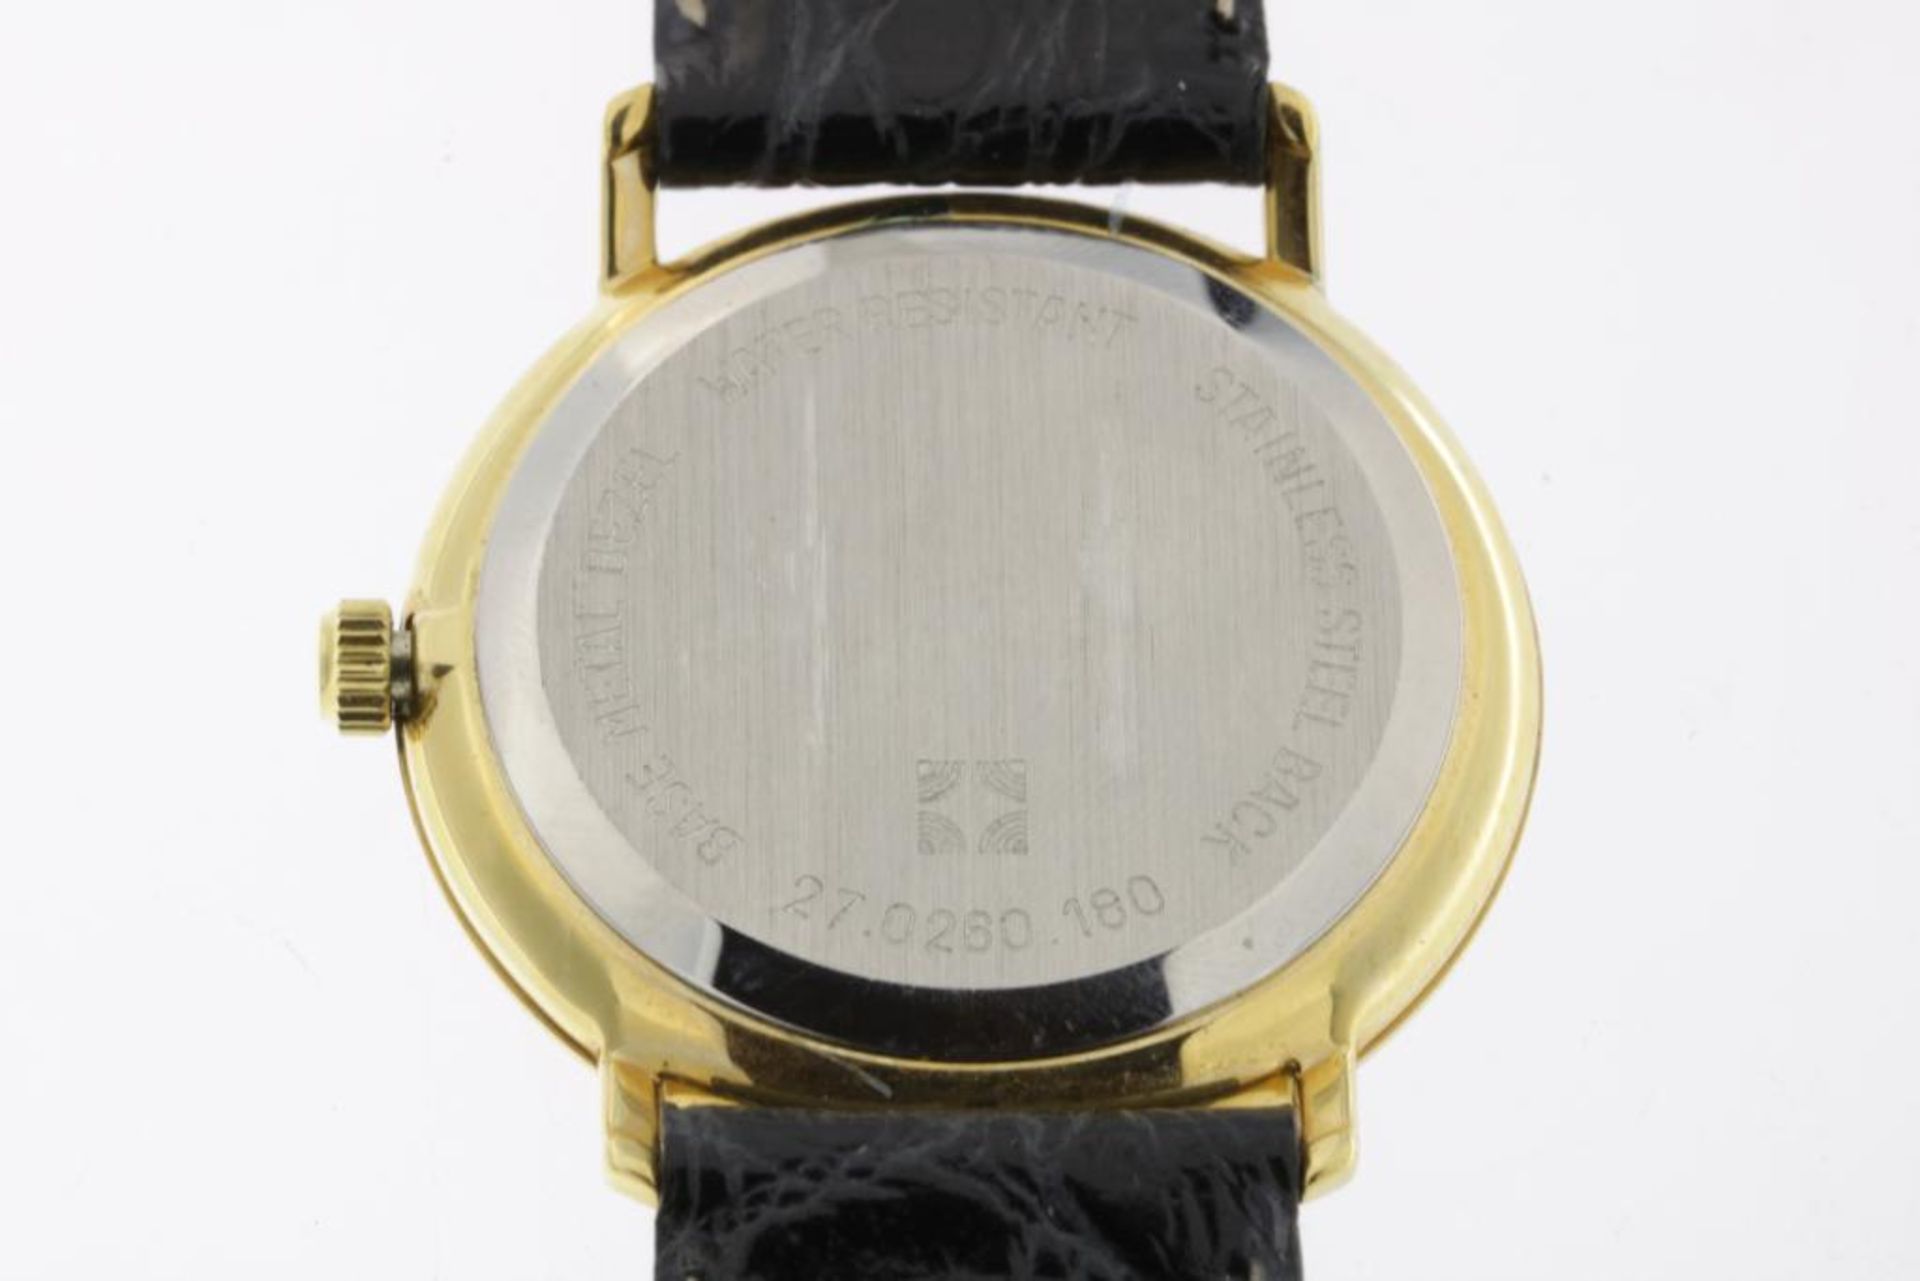 Zenith horloge met zwartlederen band, in origineel etui - Bild 2 aus 5